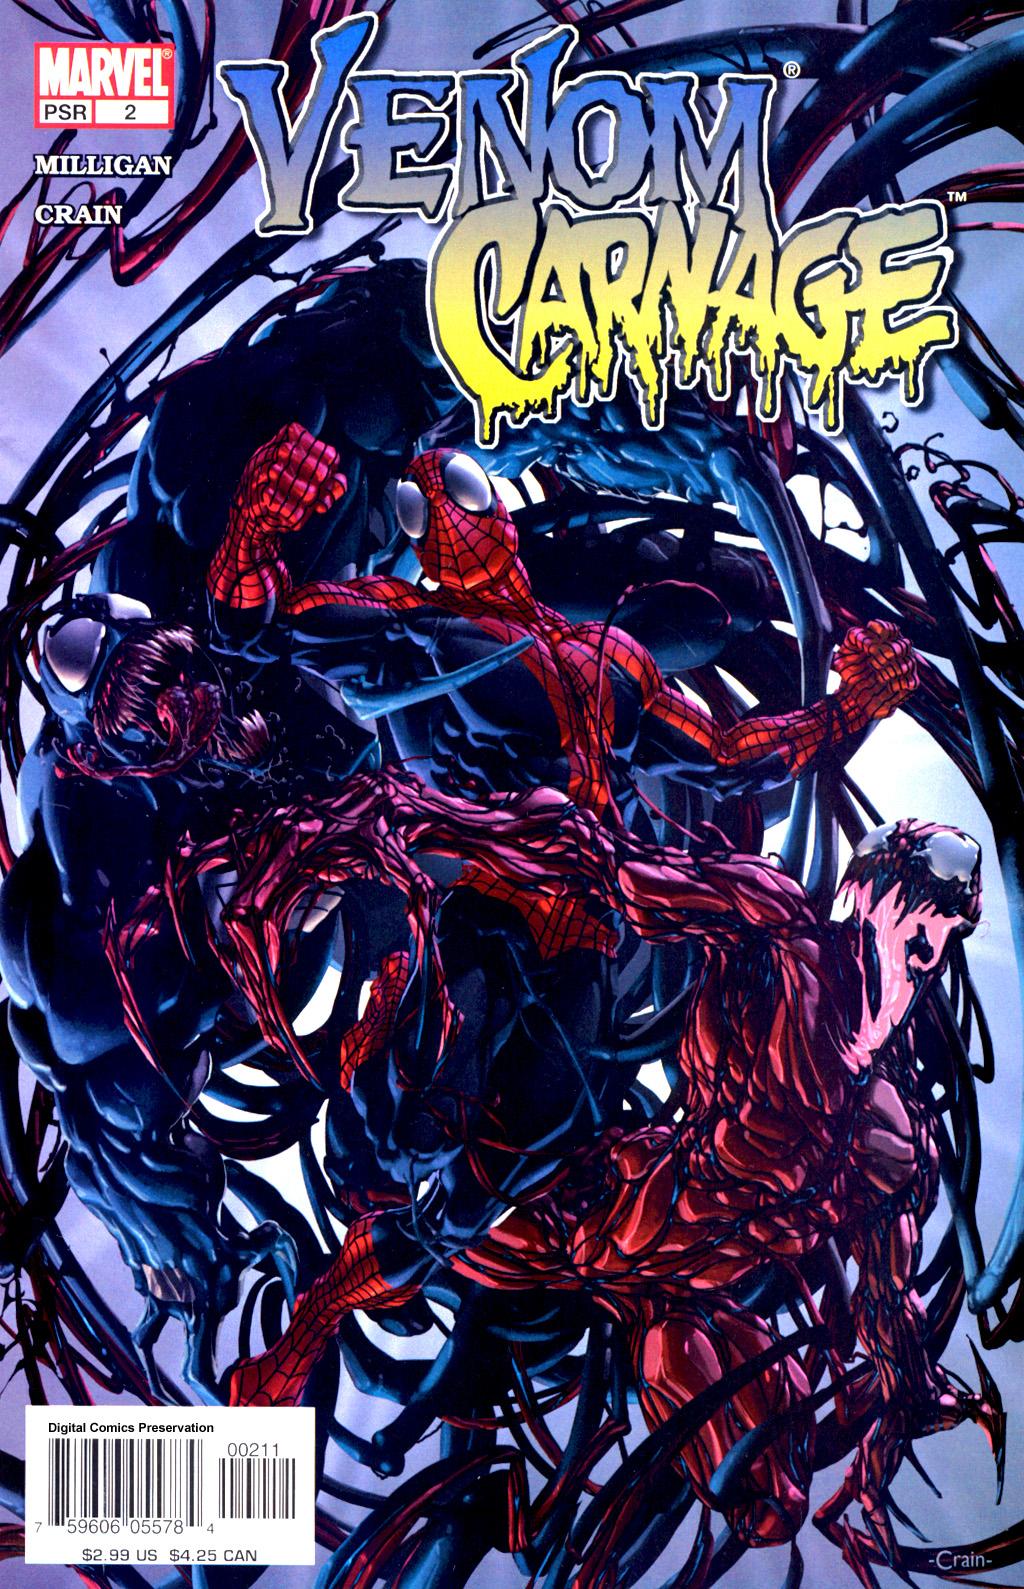 Venom Vs. Carnage Vol. 1 #2